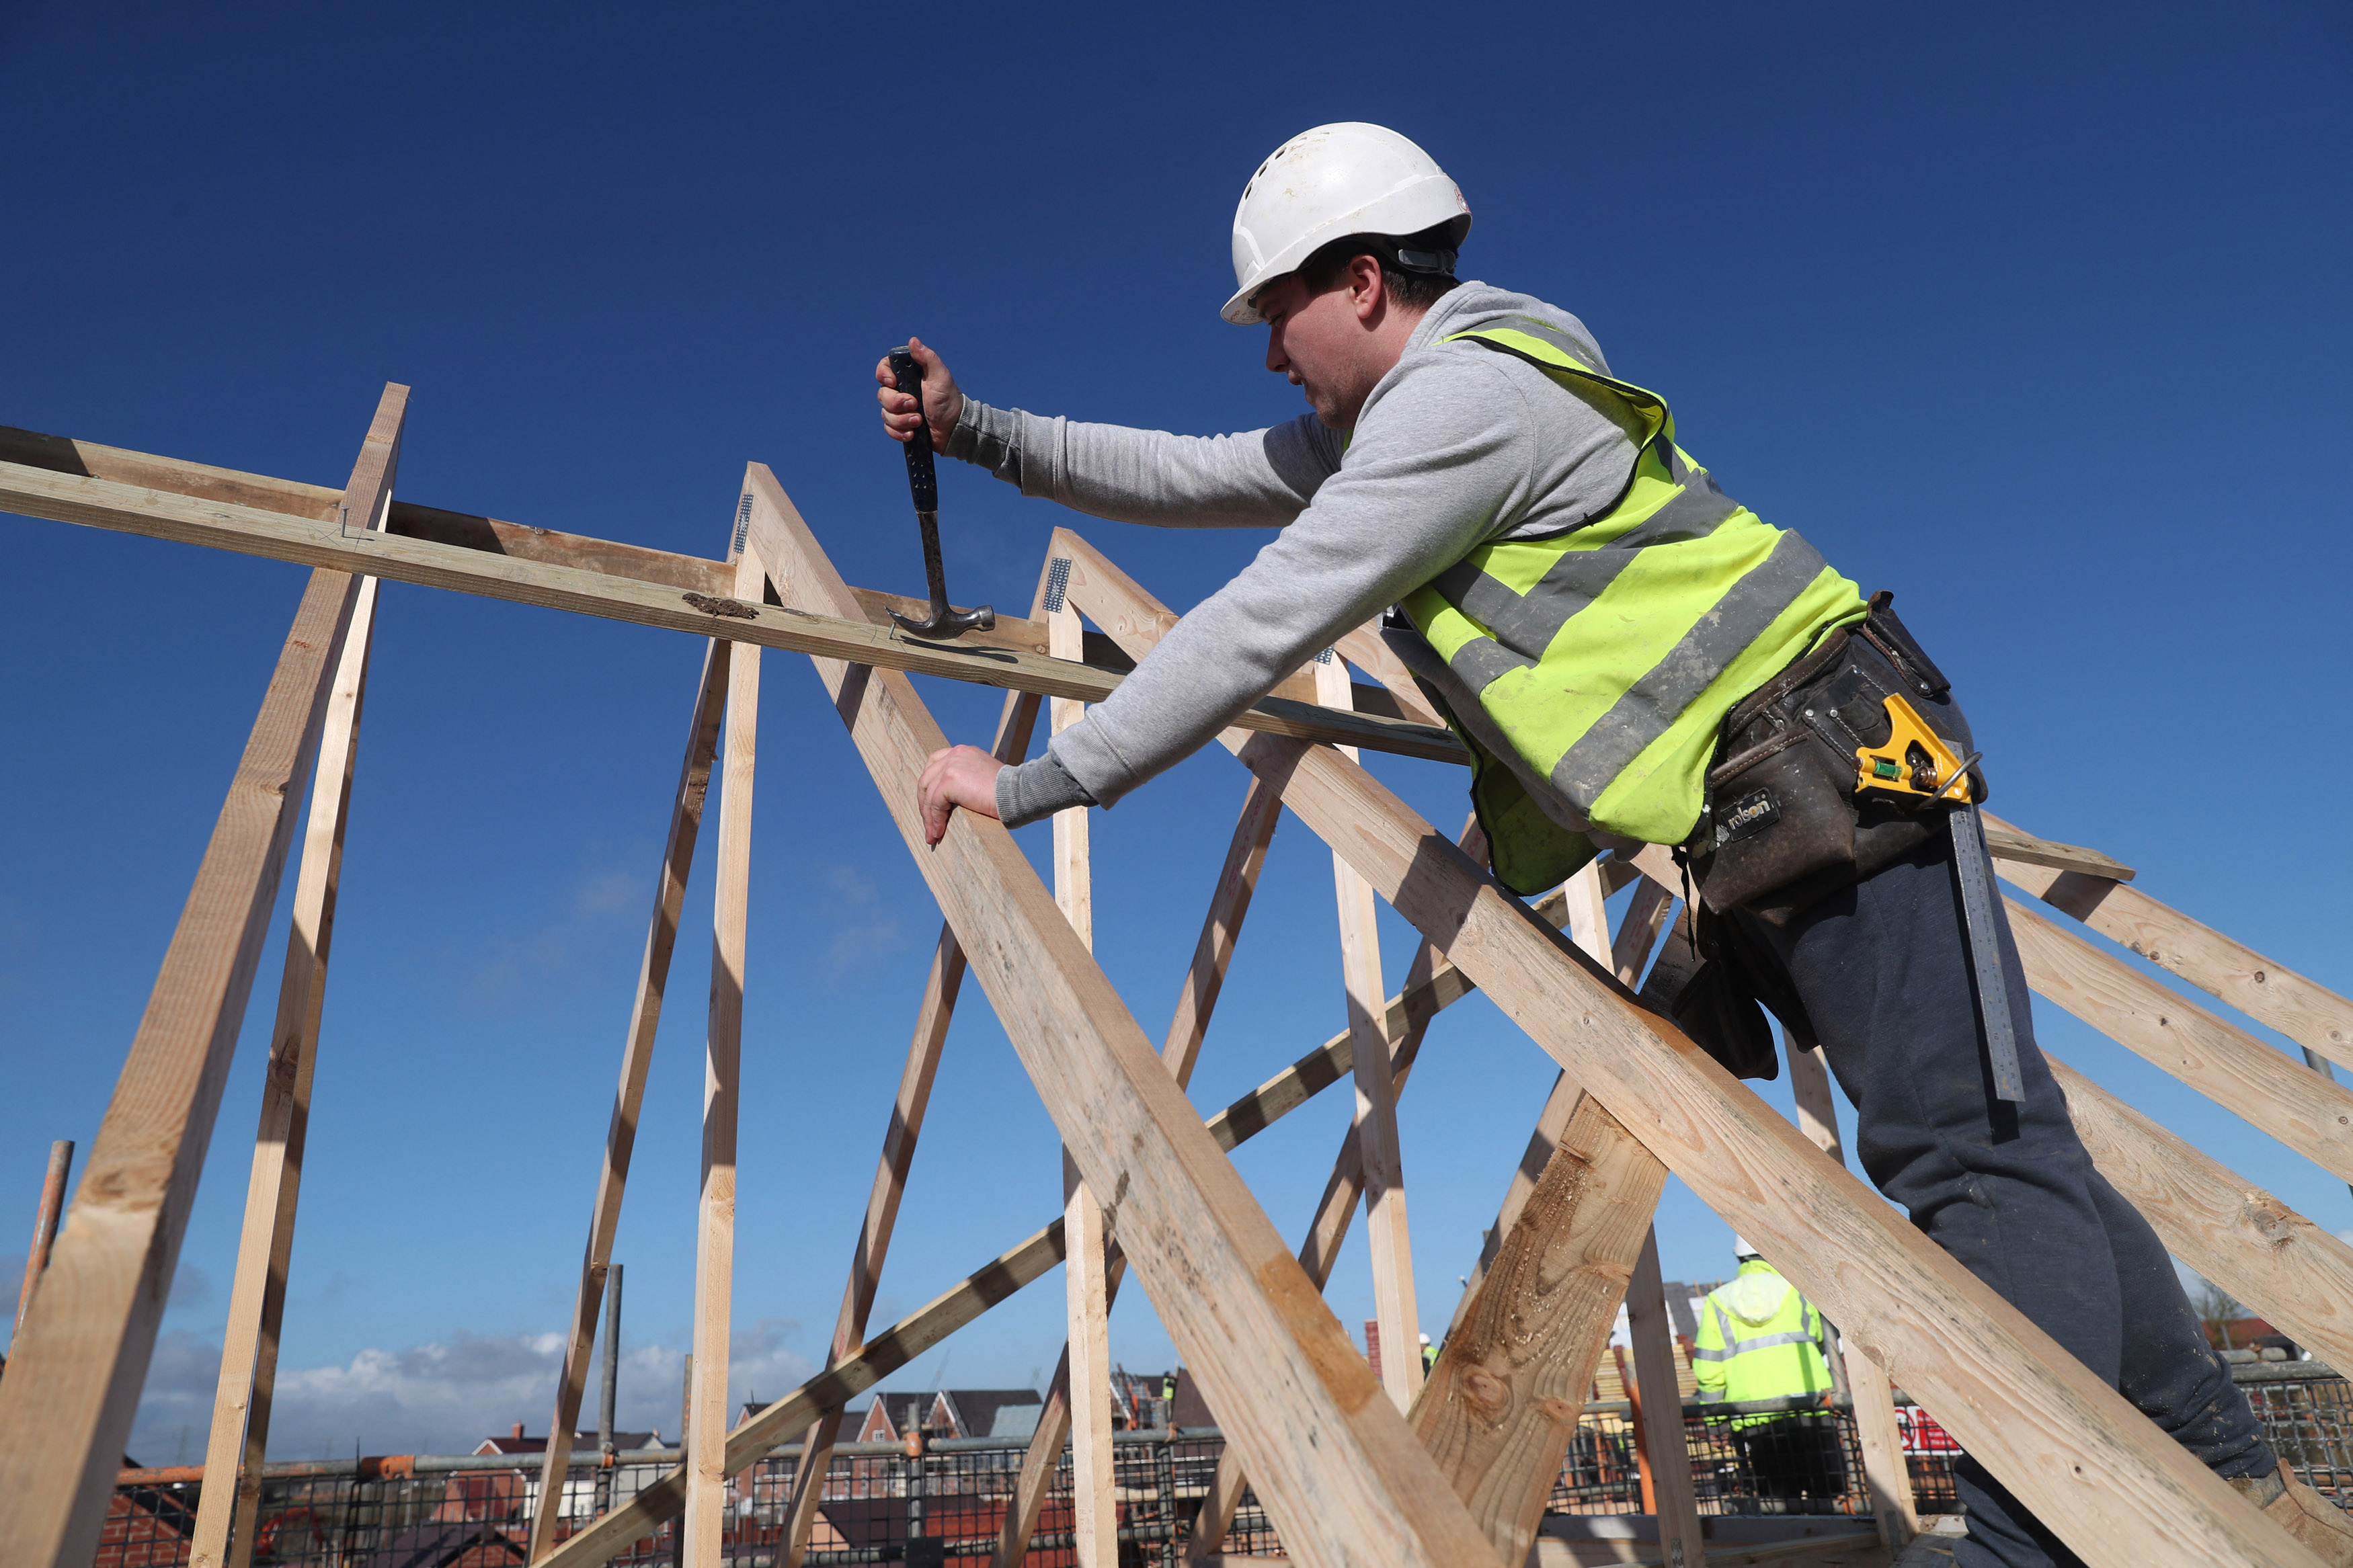 A builder works on a roof in Aylesbury, Britain, February 7, 2017. REUTERS/Eddie Keogh